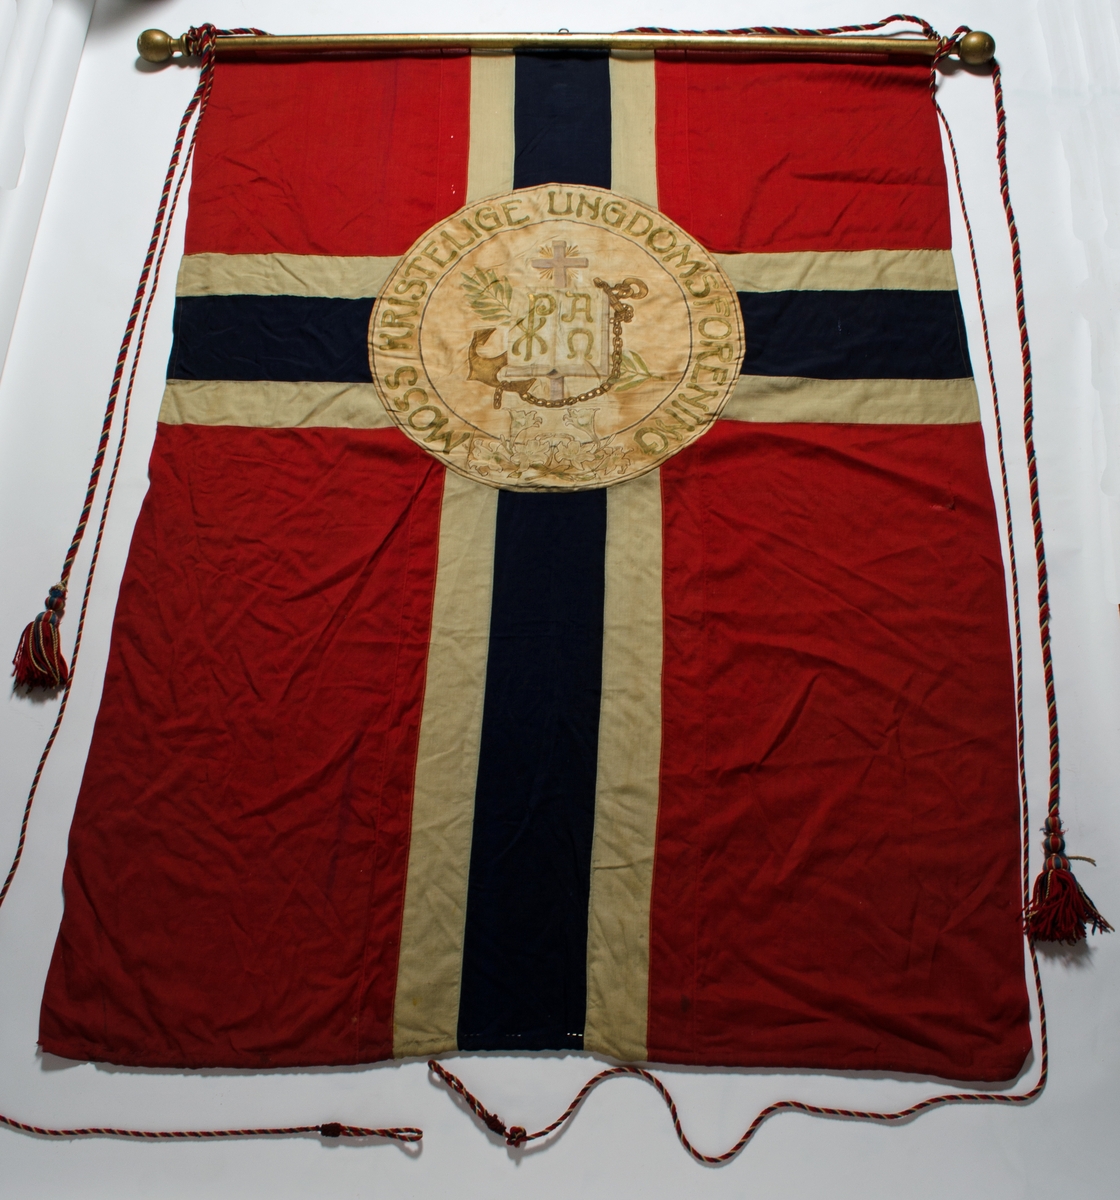 Faneduk i ull, norsk flagg i rødt, hvitt og blått med påsydd sirkel med tekst og dekor. På baksiden er det ikke påsydd sirkel med tekst og dekor. Faneduken er montert på tverrstang med kule i hver ende, to styresnorer og en bardunsnor.